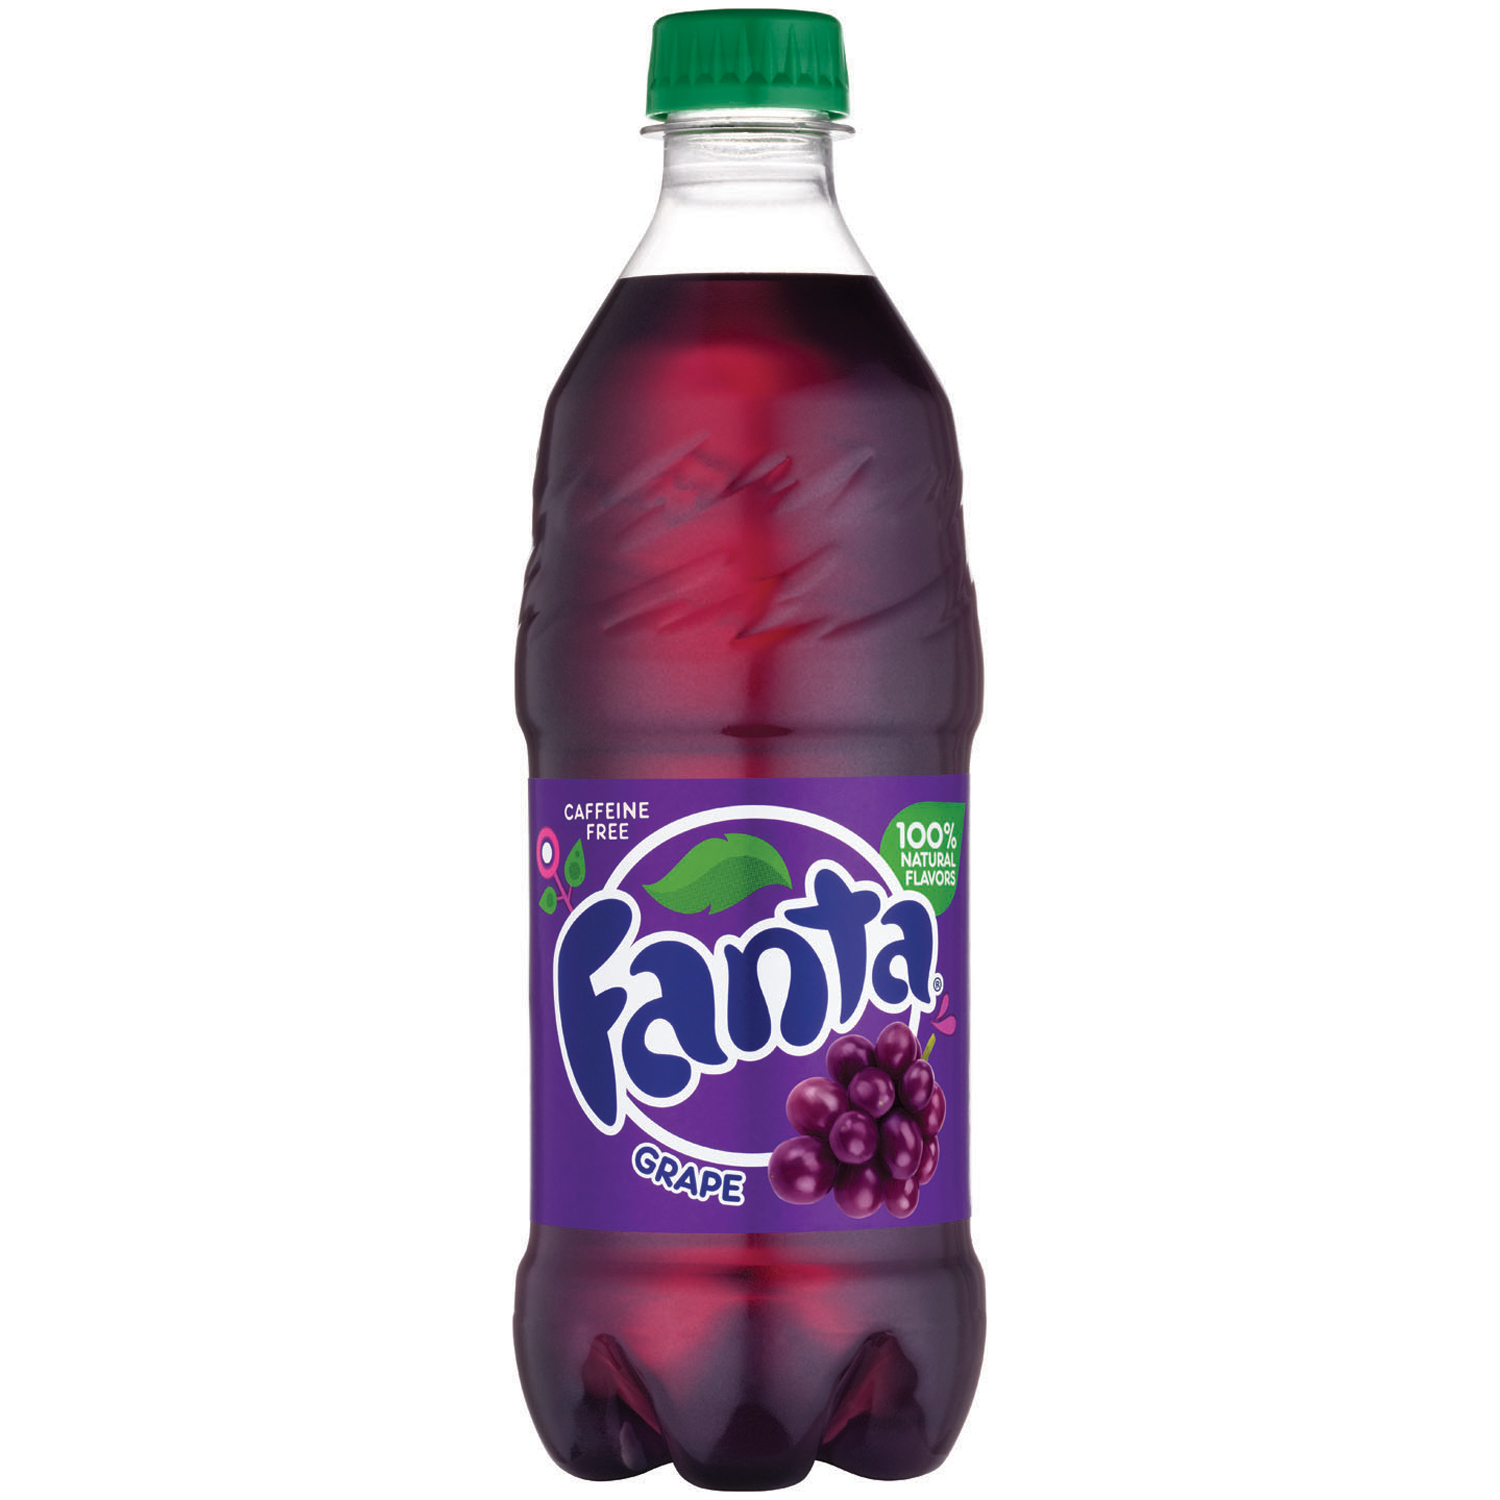 https://soda-emporium.com/wp-content/uploads/2021/05/20oz-Fanta-Grape.jpeg